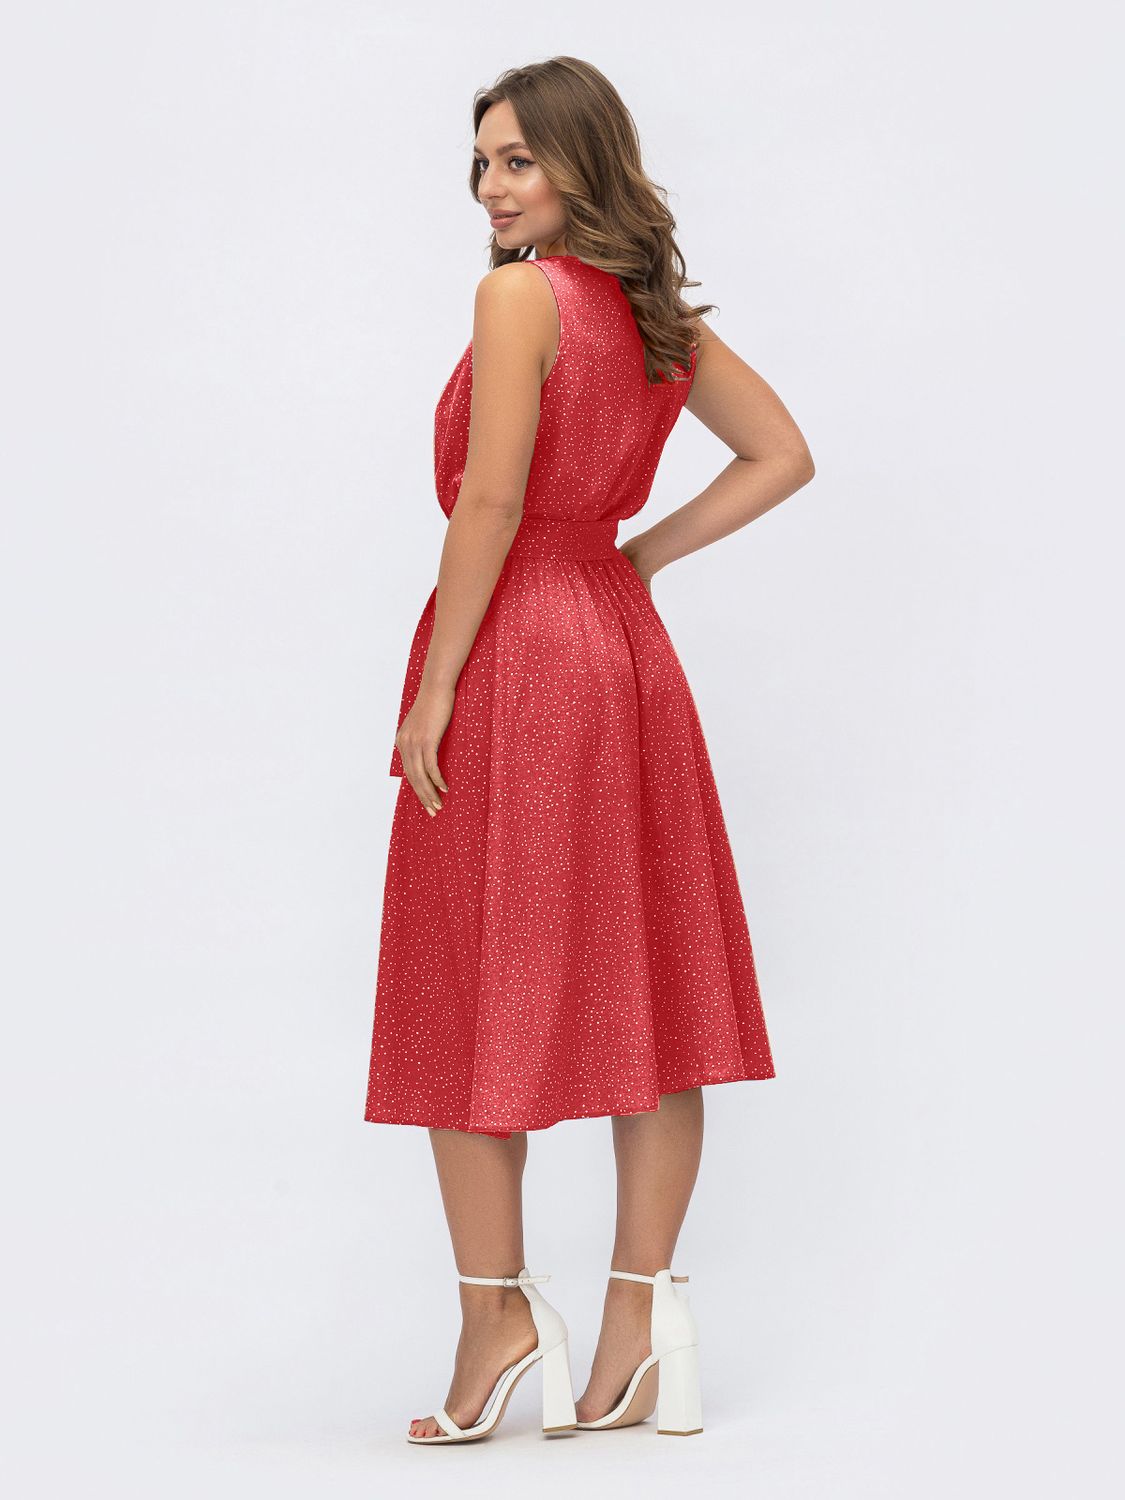 Расклешенное платье с открытыми плечами красное - фото